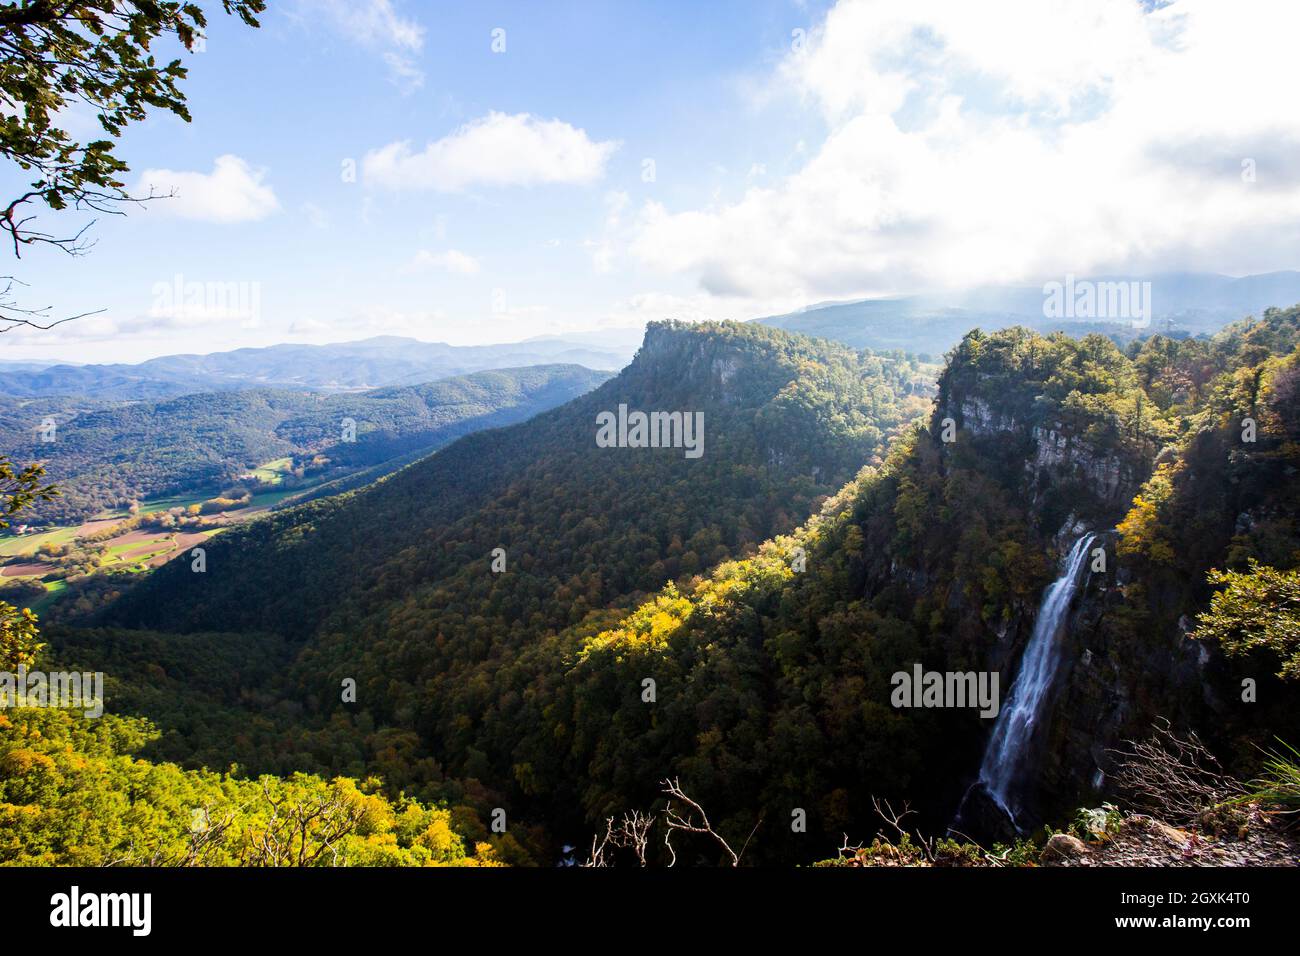 Paysage de montagne et cascade de sel de Coromina en automne, la Garrotxa, Gérone, Espagne Banque D'Images